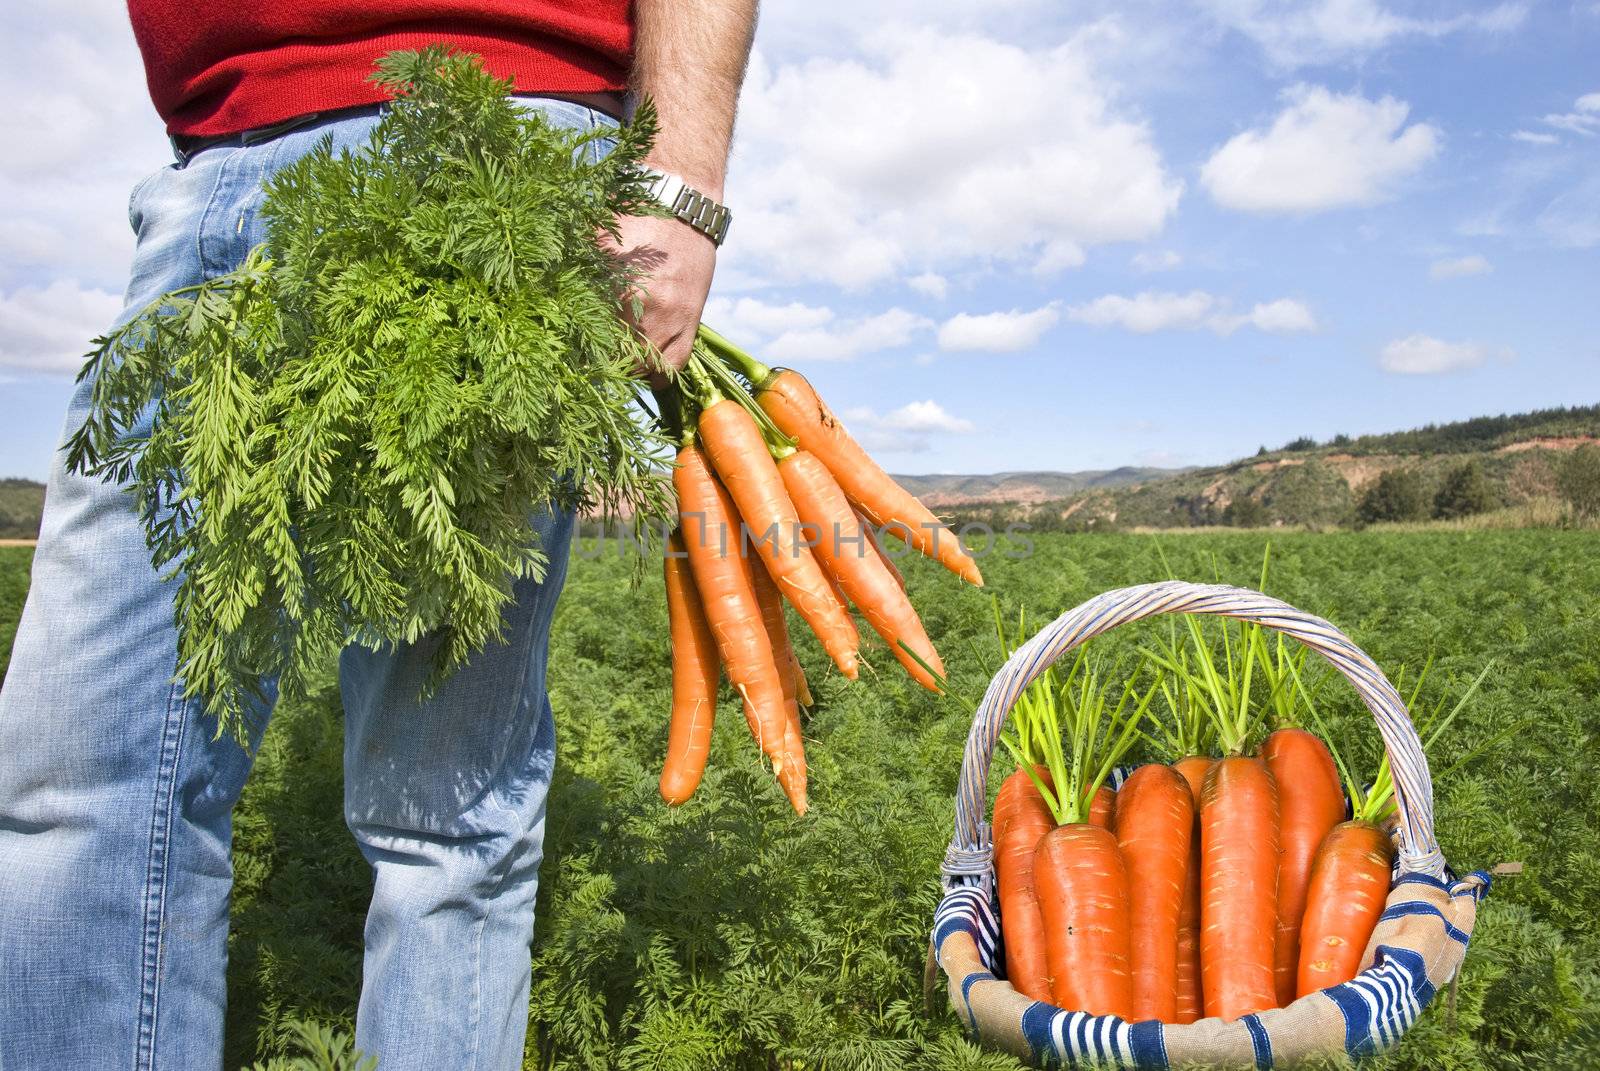 Proud carrot farmer picking fresh carrots for his basket